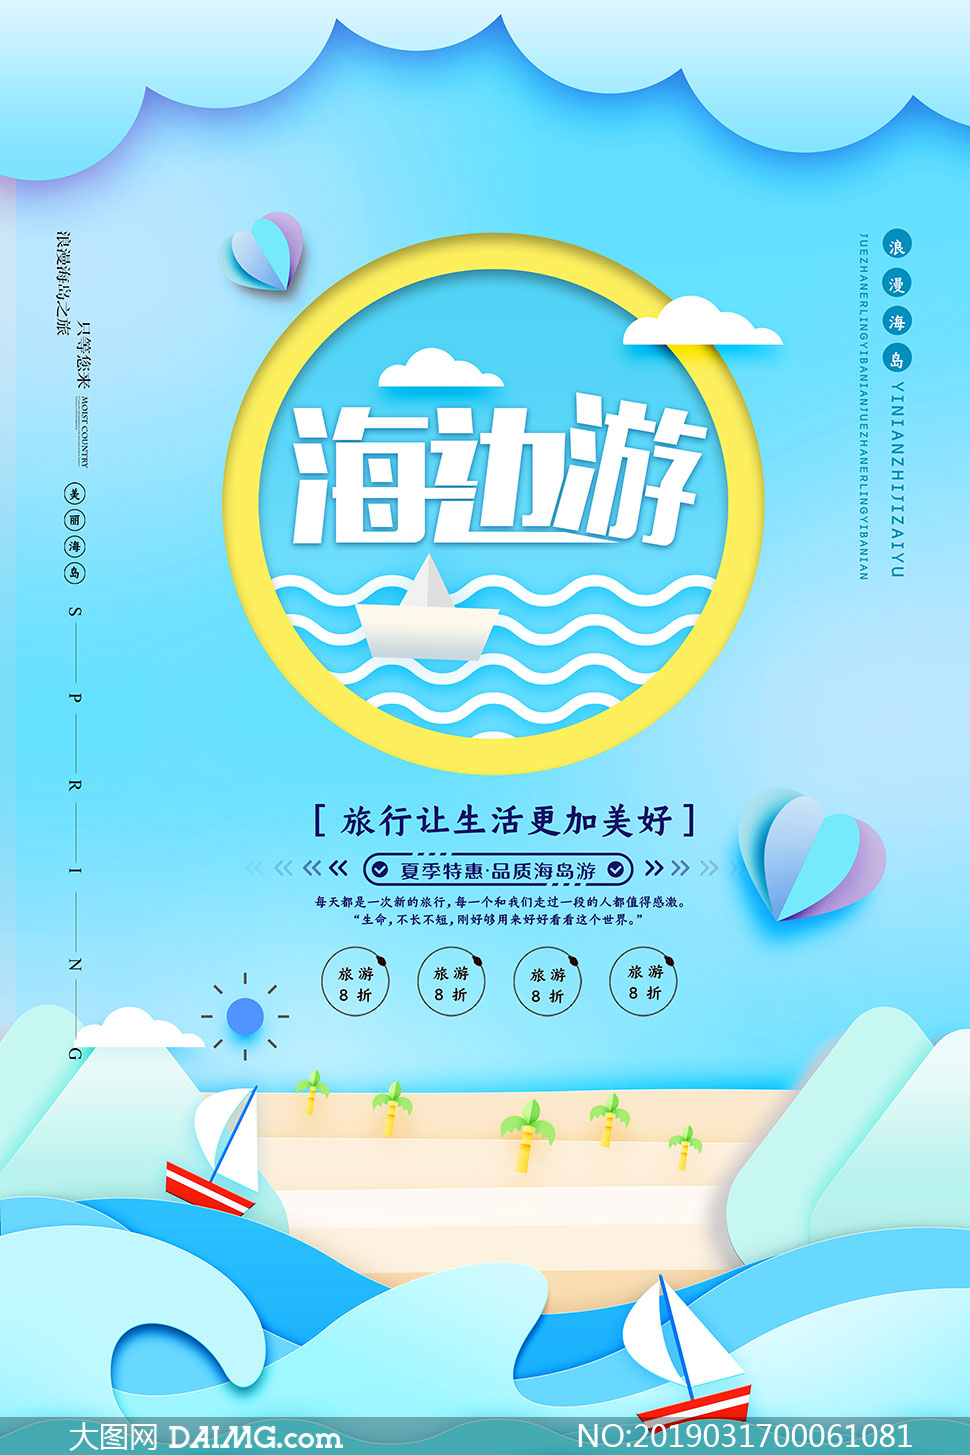 海边旅游宣传海报设计psd源文件